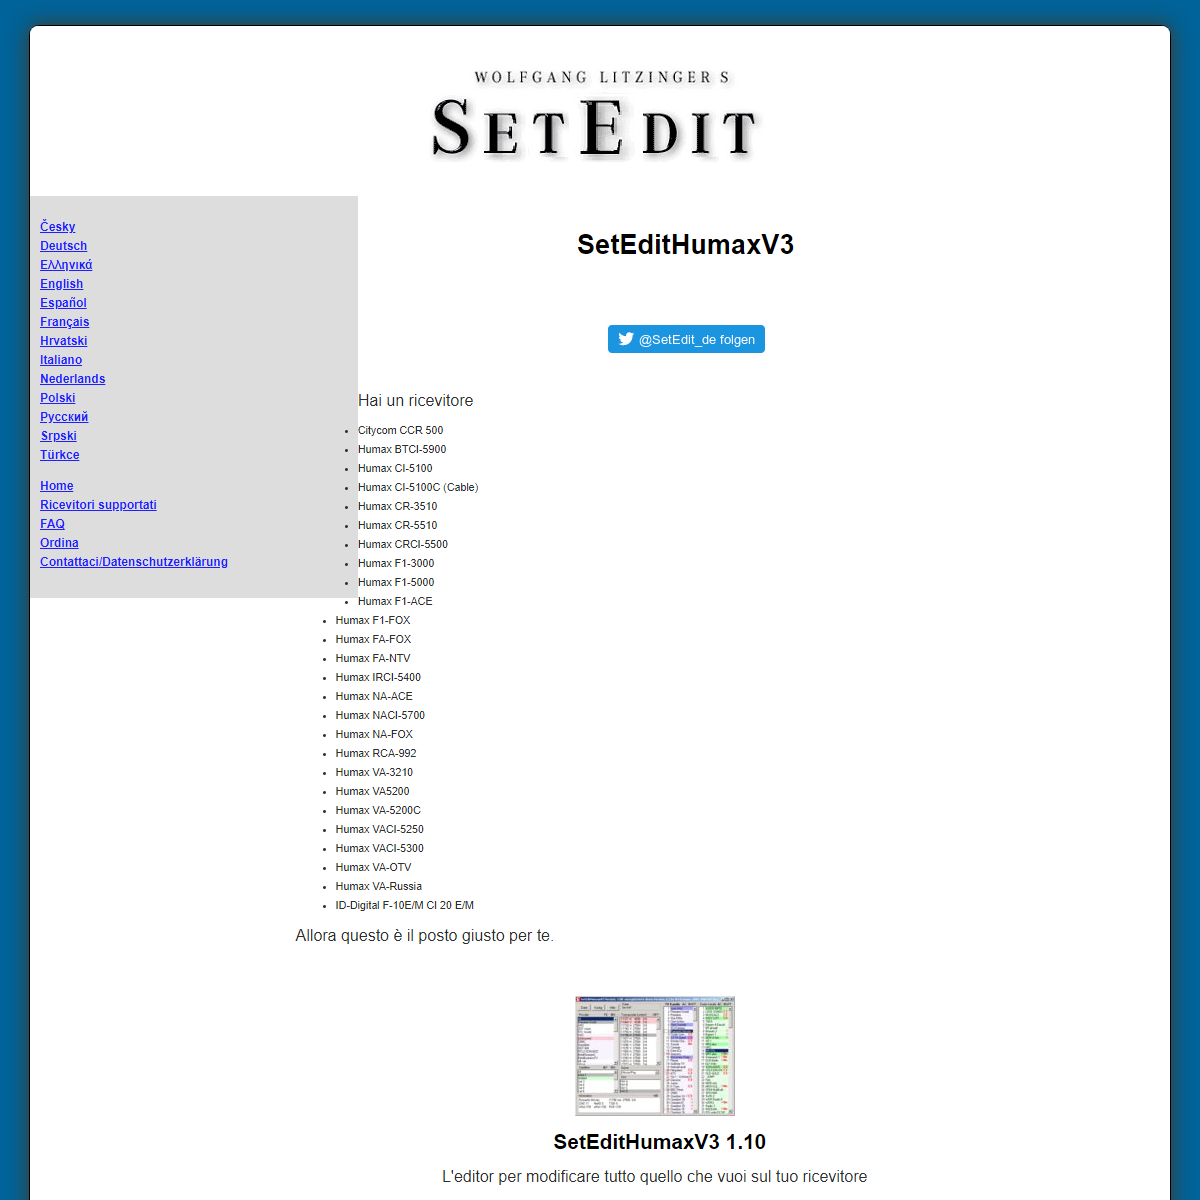 A complete backup of https://www.setedit.de/SetEdit.php?spr=6&Editor=16